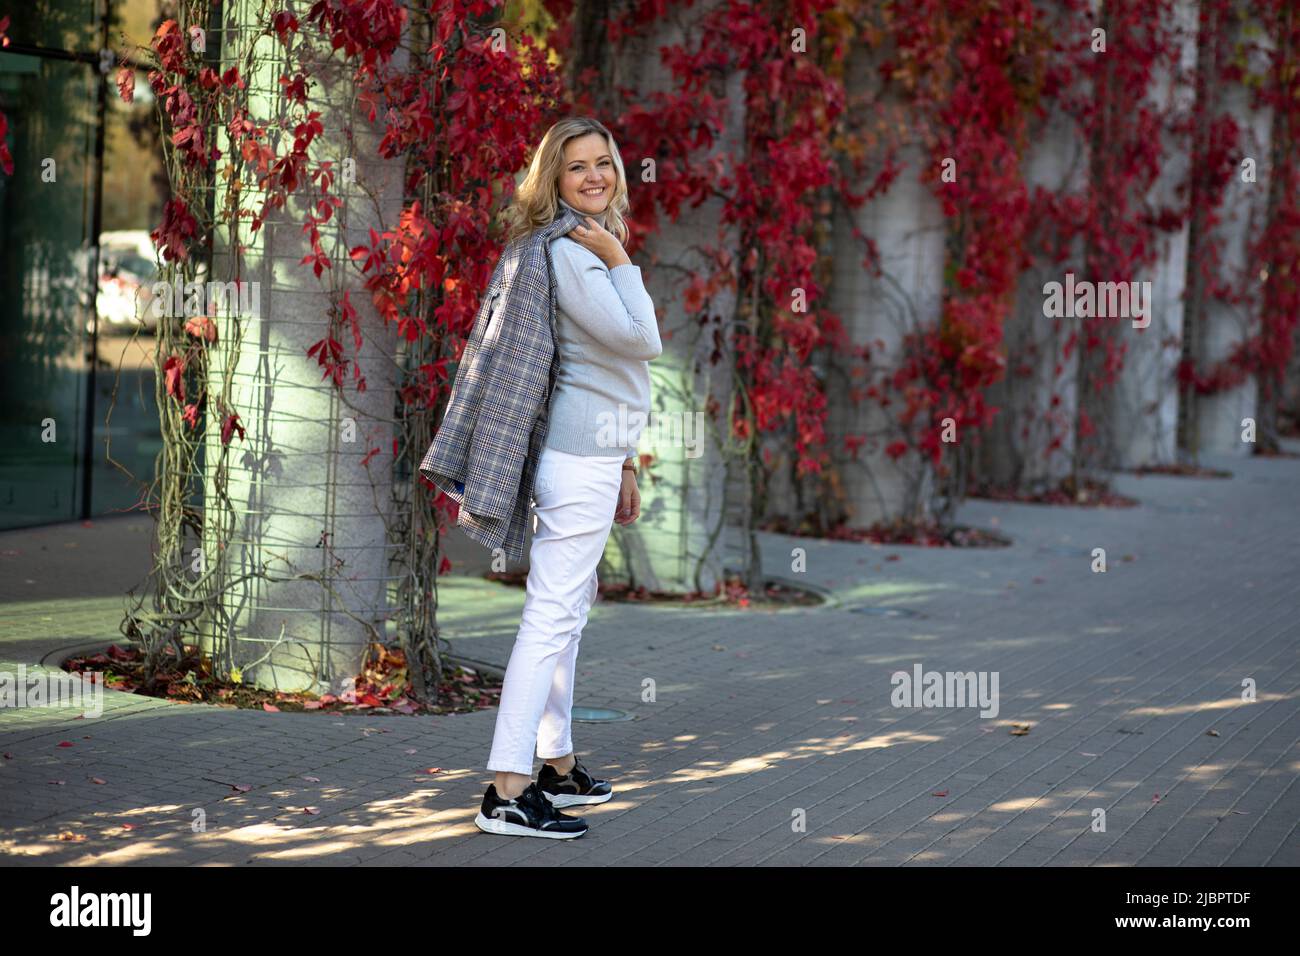 Bellamente vestido rubio rubio de 35-40 años de edad en pantalones blancos y chaqueta ligera poses, sonriendo a la cámara en la calle de la ciudad con follaje rojo brillante Foto de stock